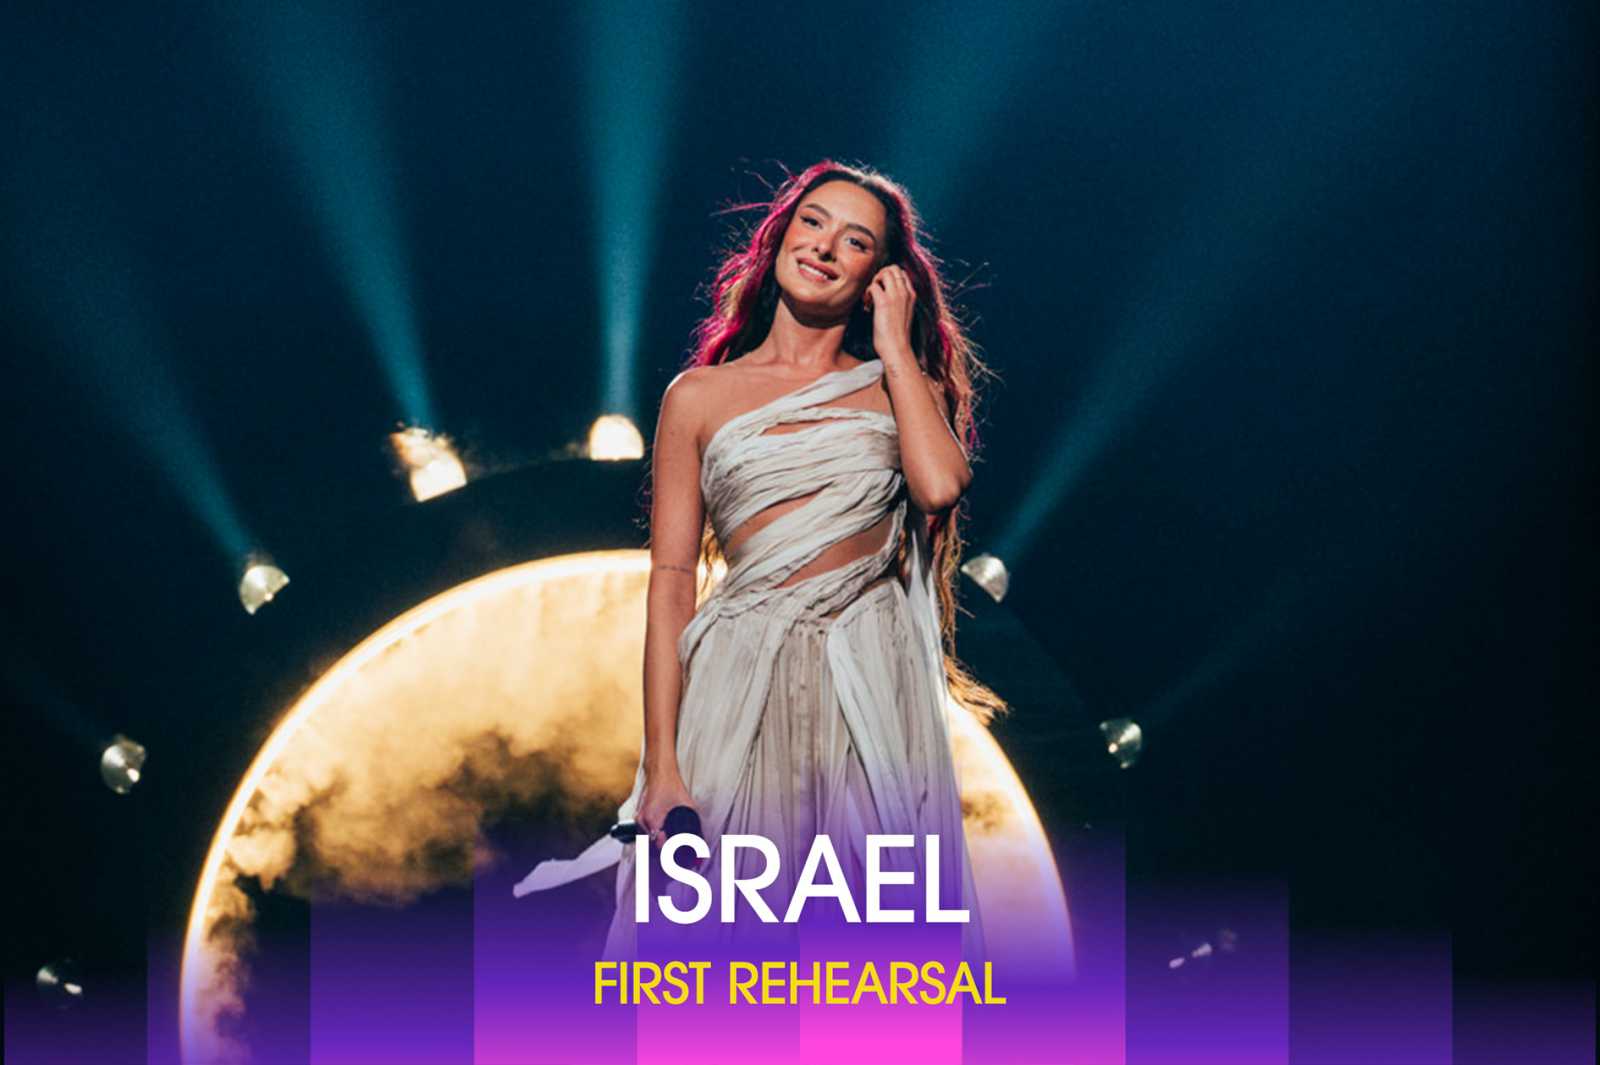 Politika a nézőtéren: kifütyülték az Izraelt képviselő énekesnőt az Eurovíziós dalfesztiválon